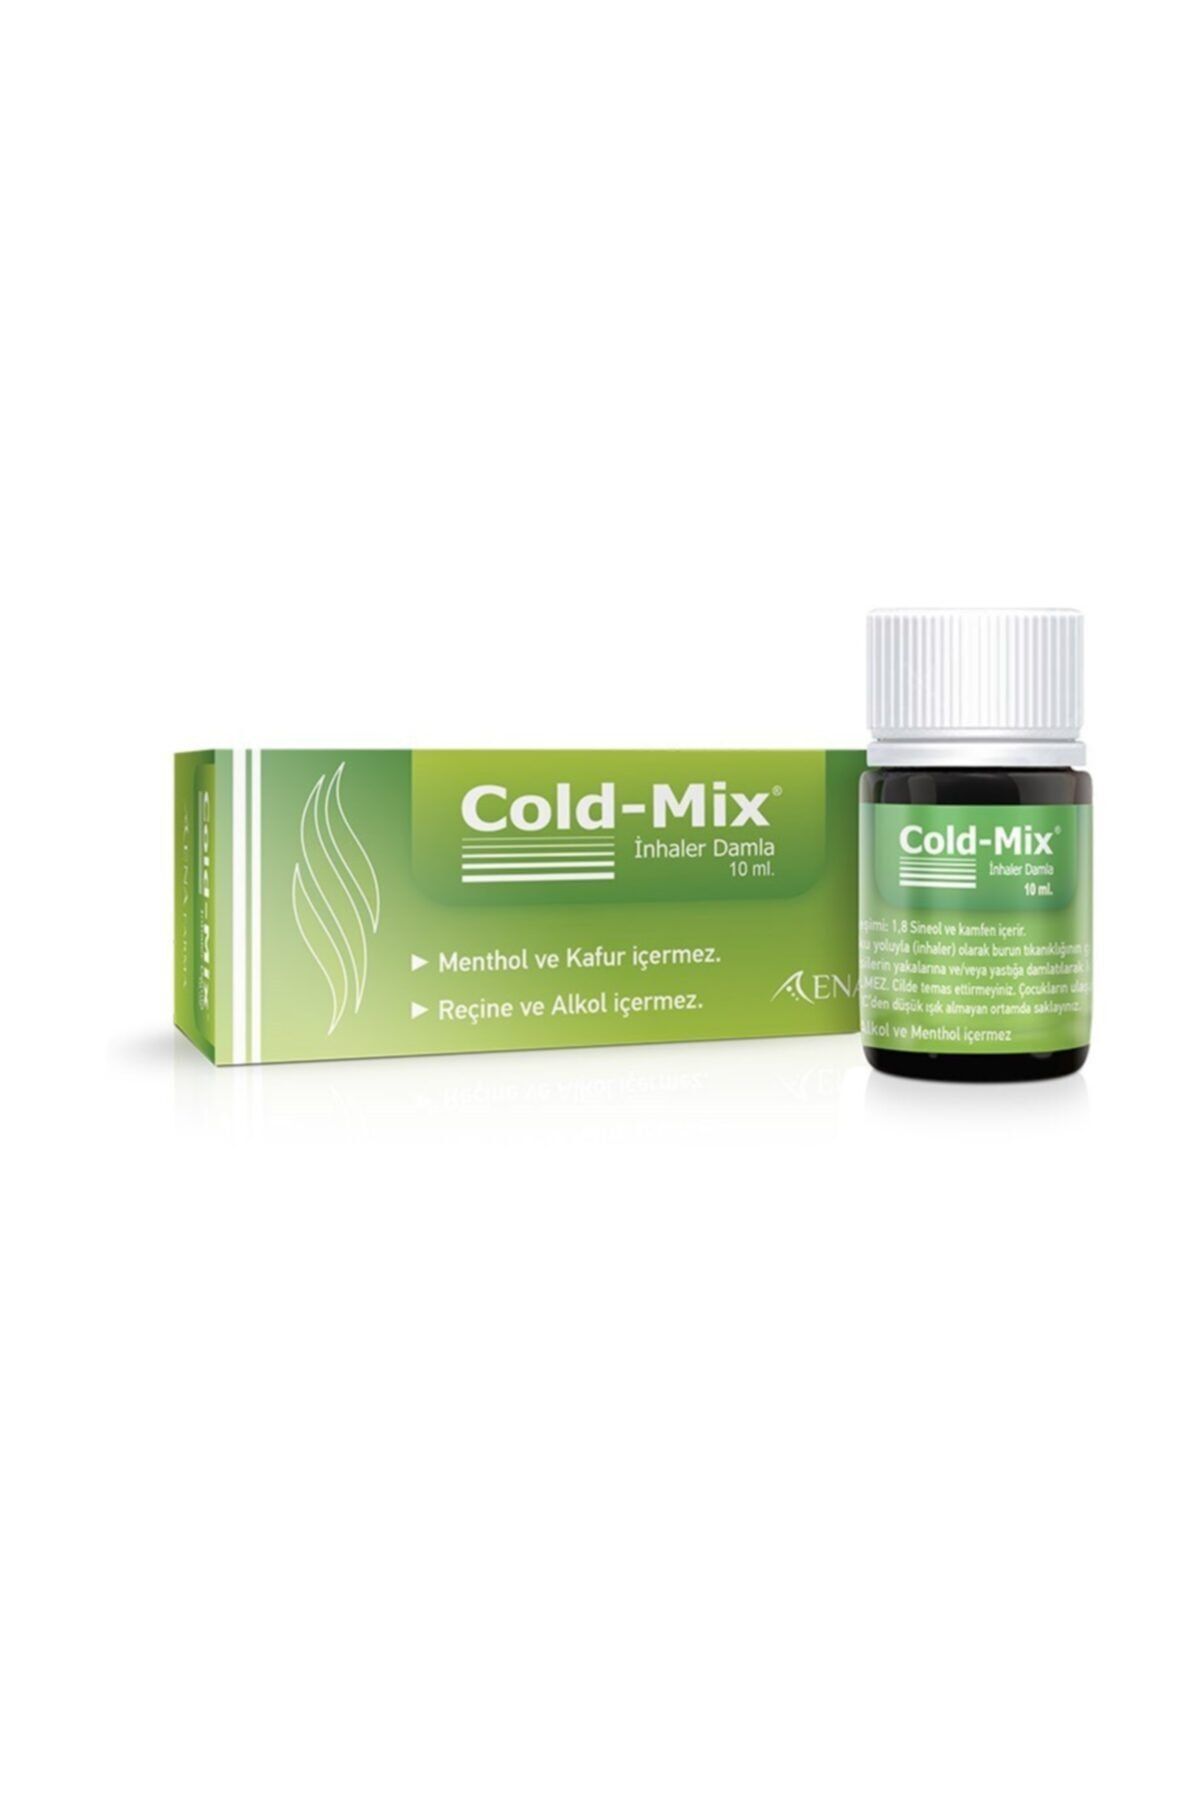 Cold-Mix Inhaler Damla 10 Ml